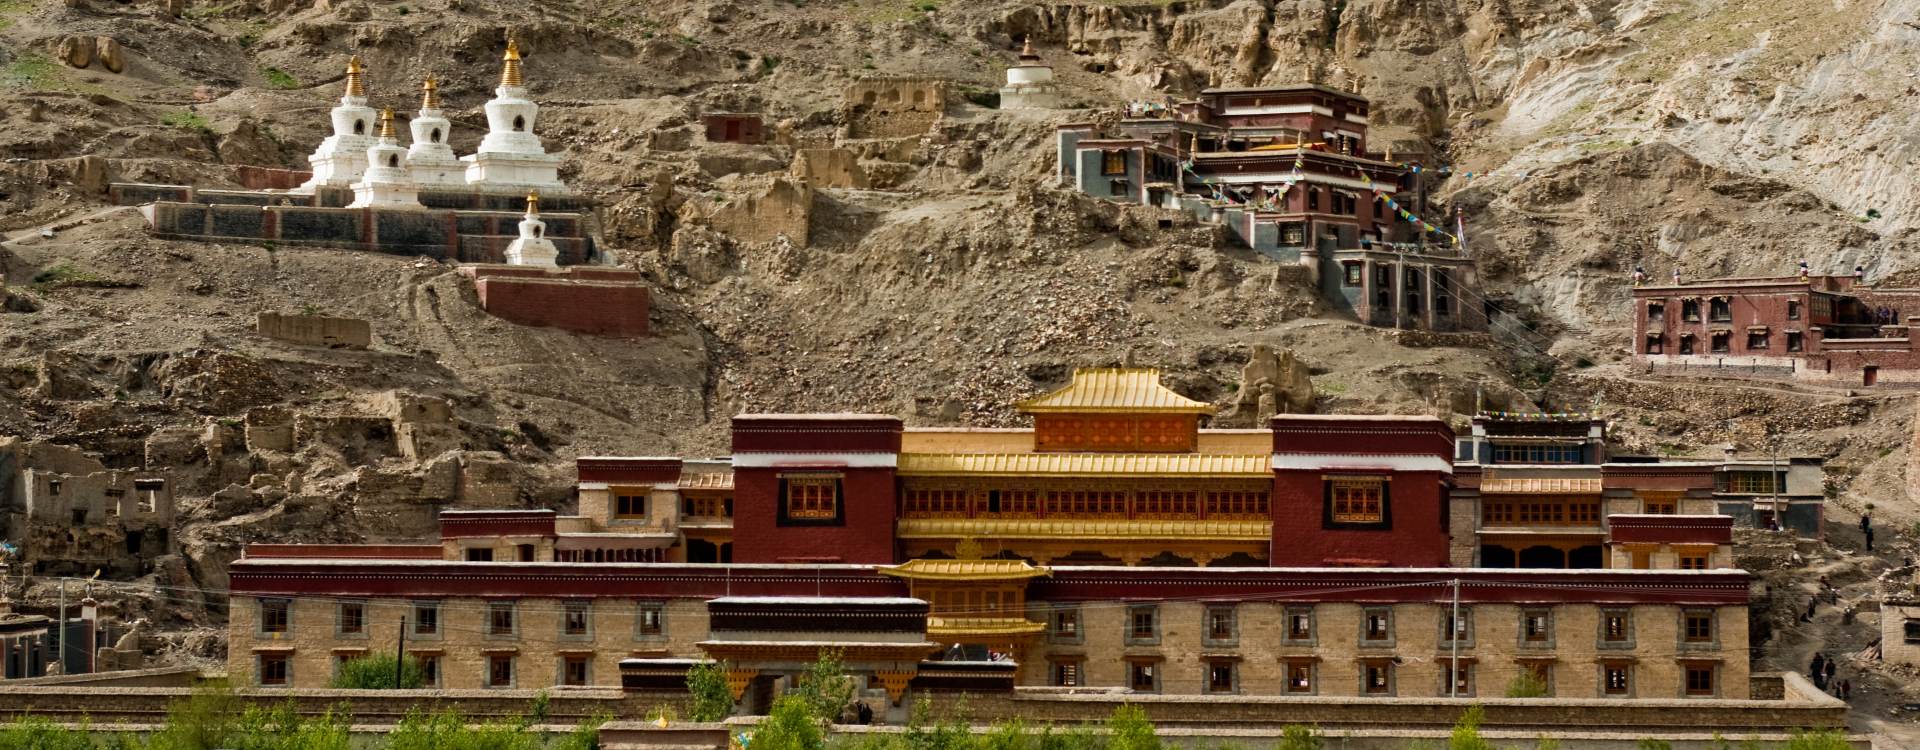 Central Tibet Cultural Tour